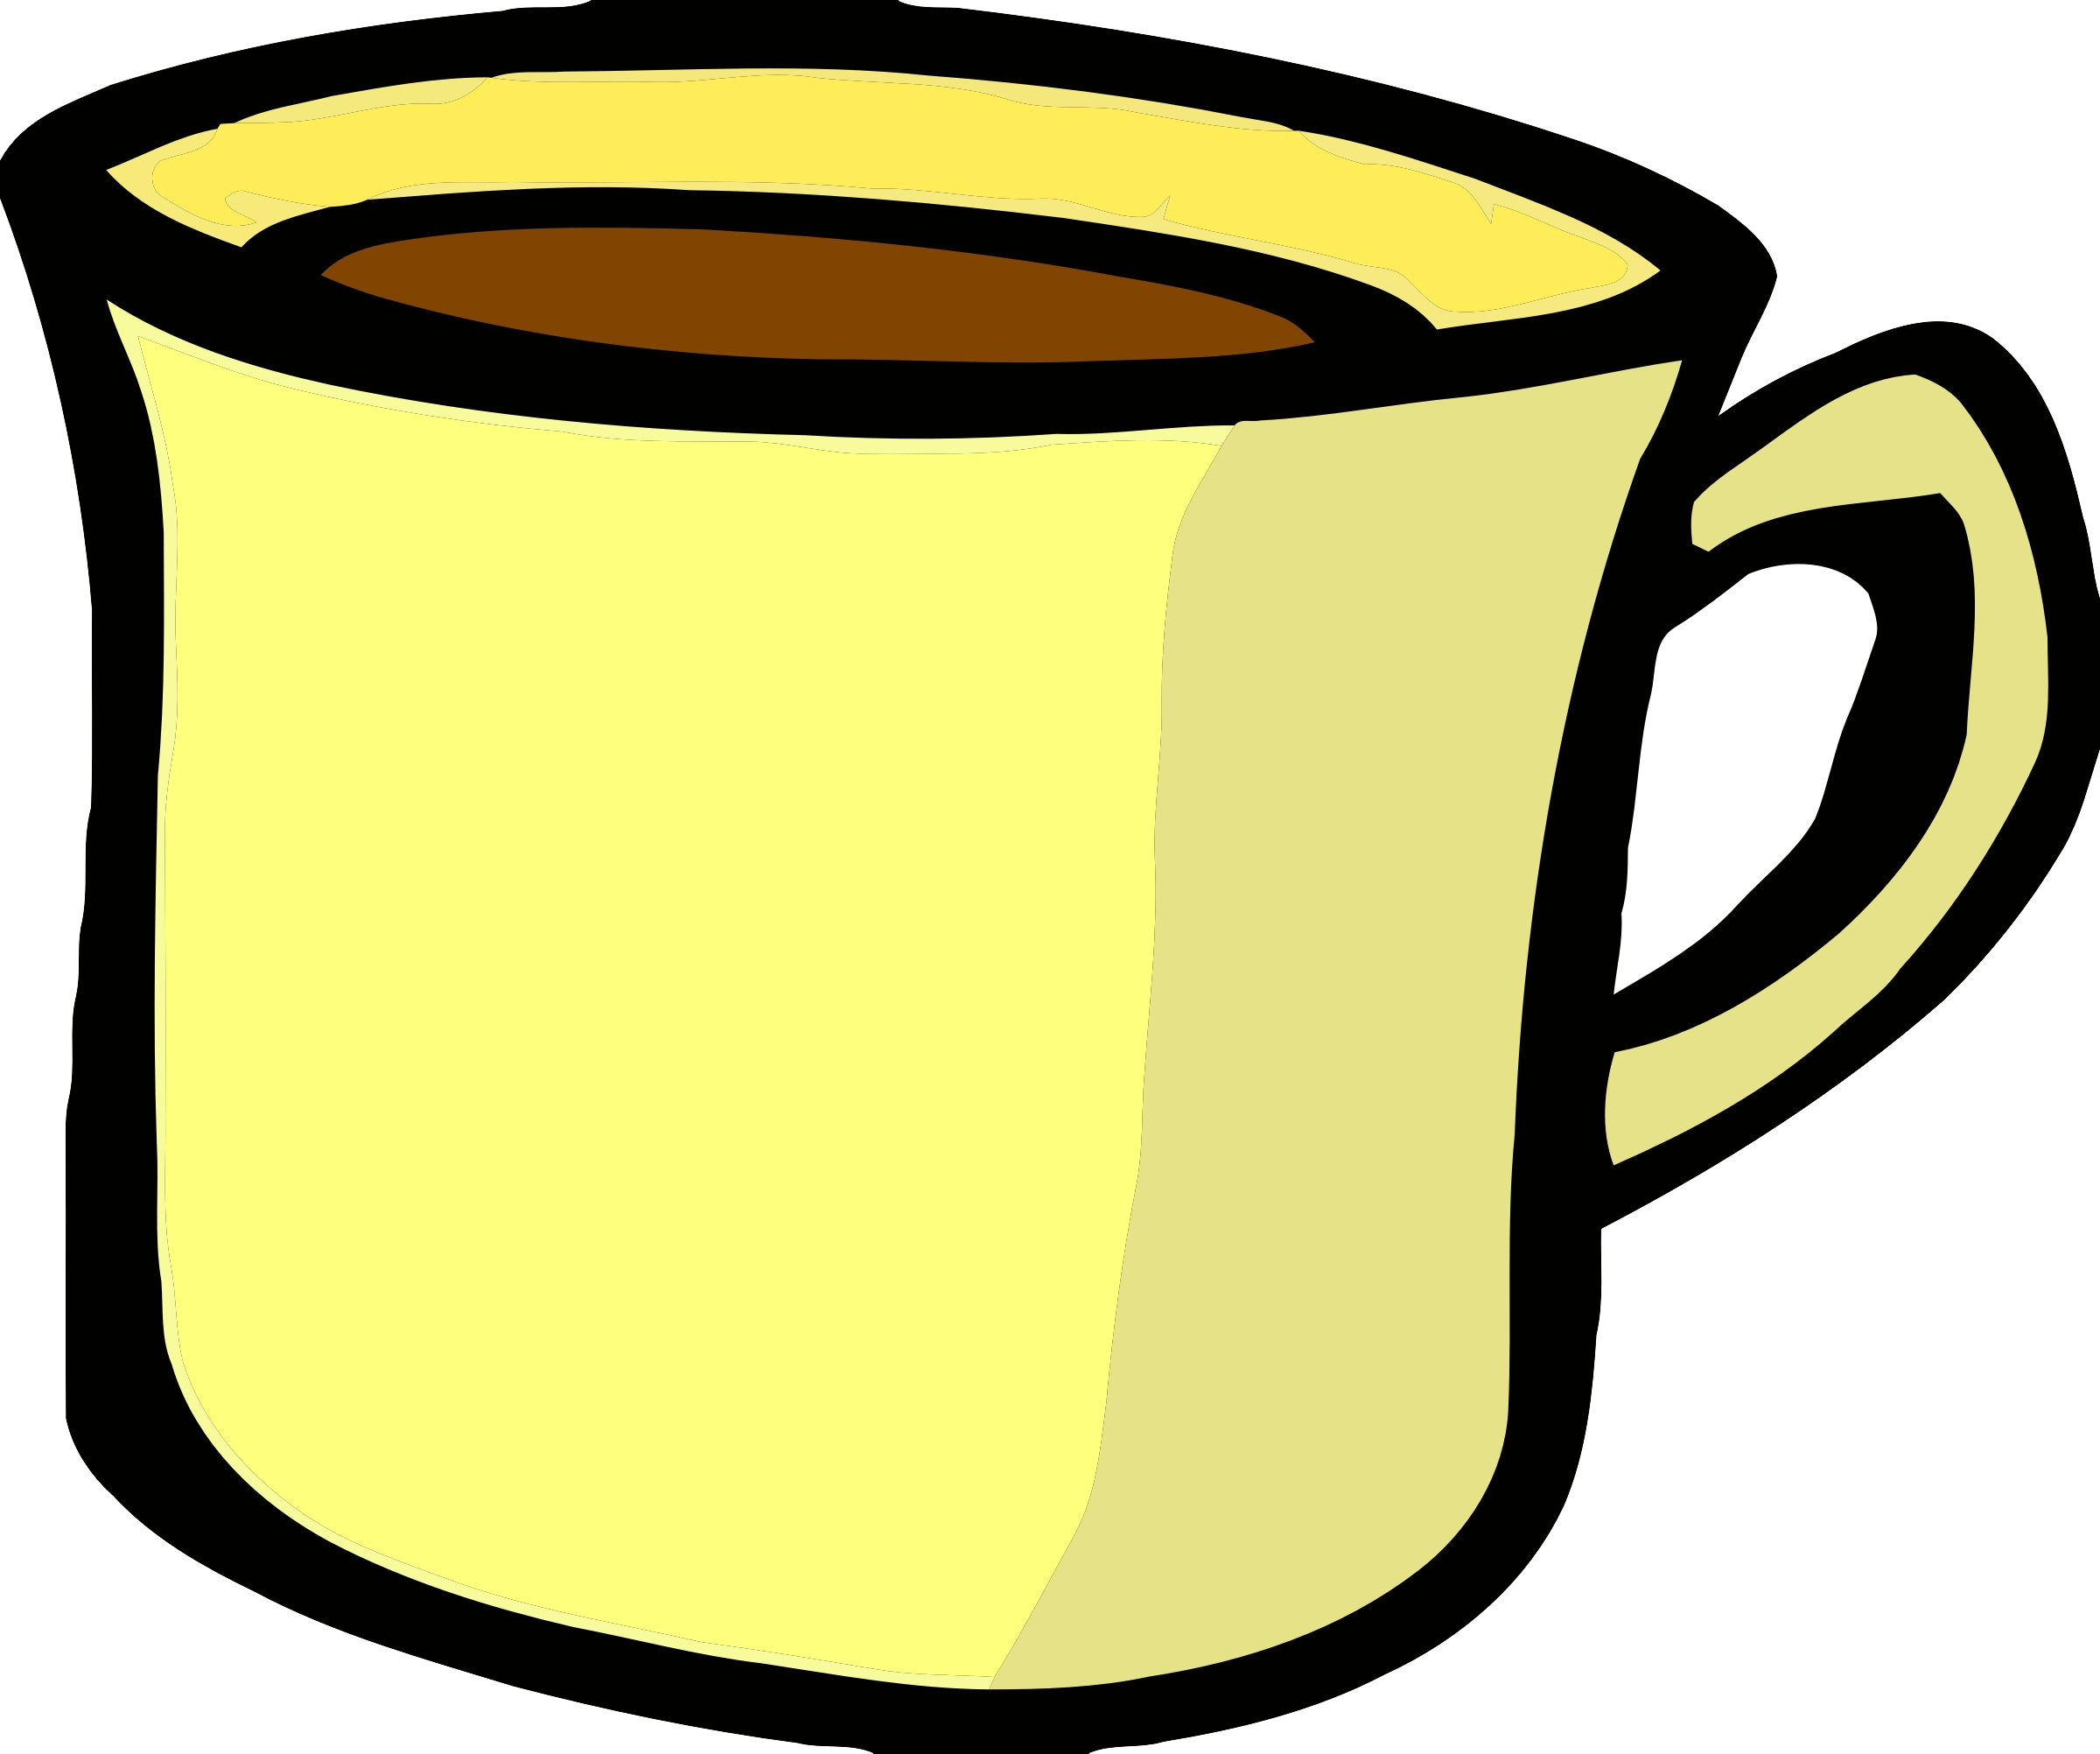 Animated Coffee Mug Cartoon : Coffee Cup Animation With CorelDRAW and